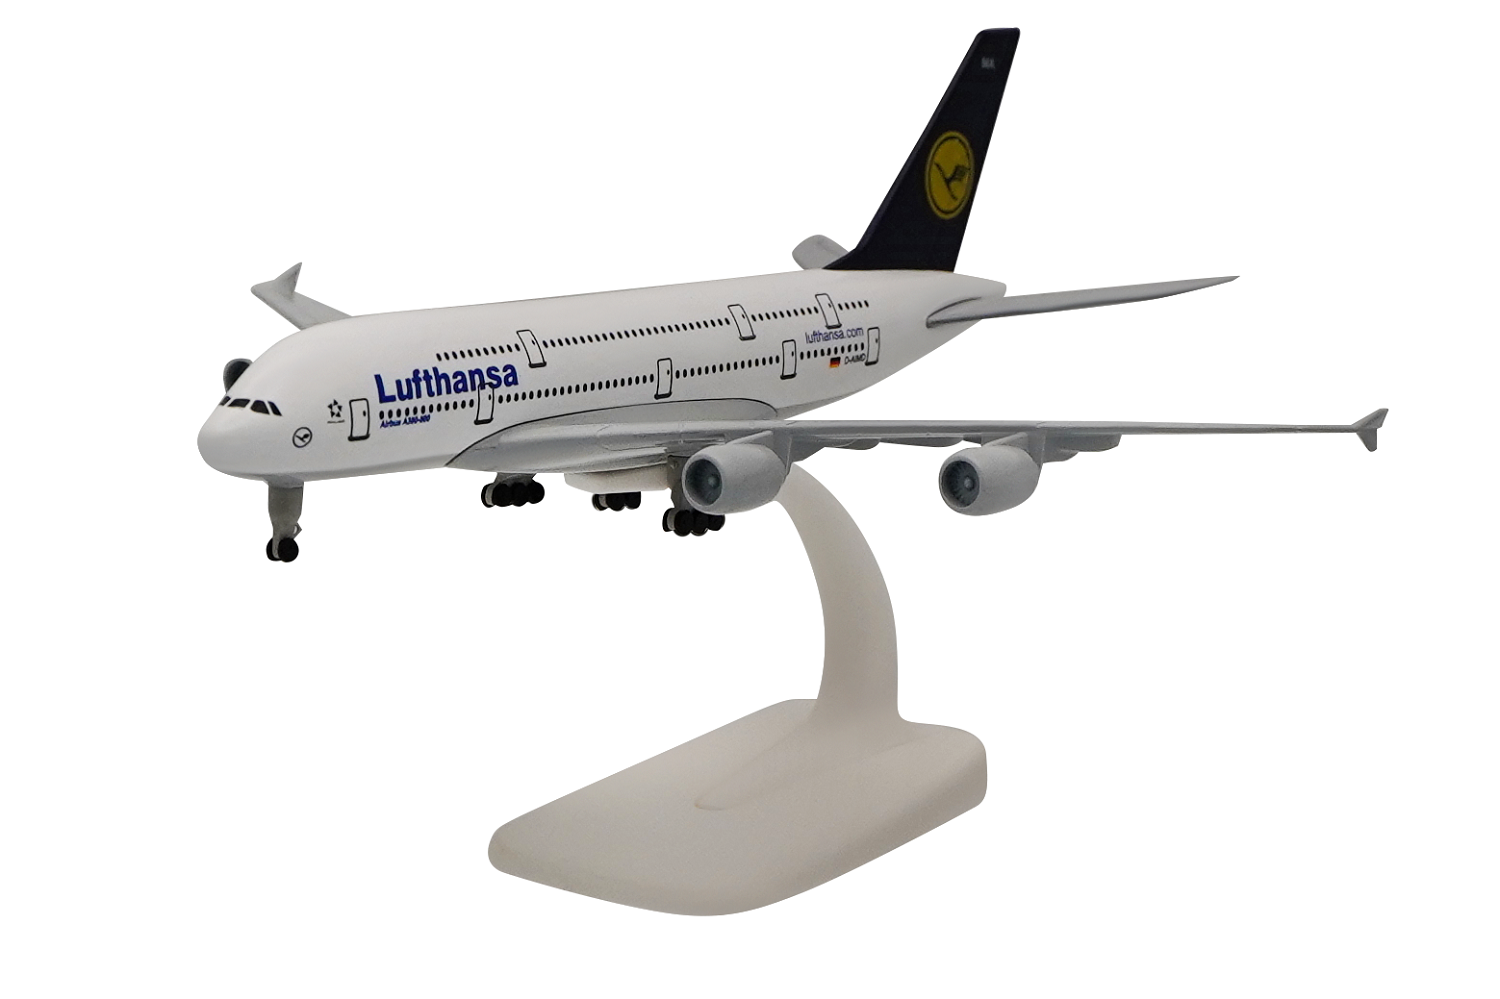   Airbus A380  Lufthansa. # 7 hobbyplus.ru